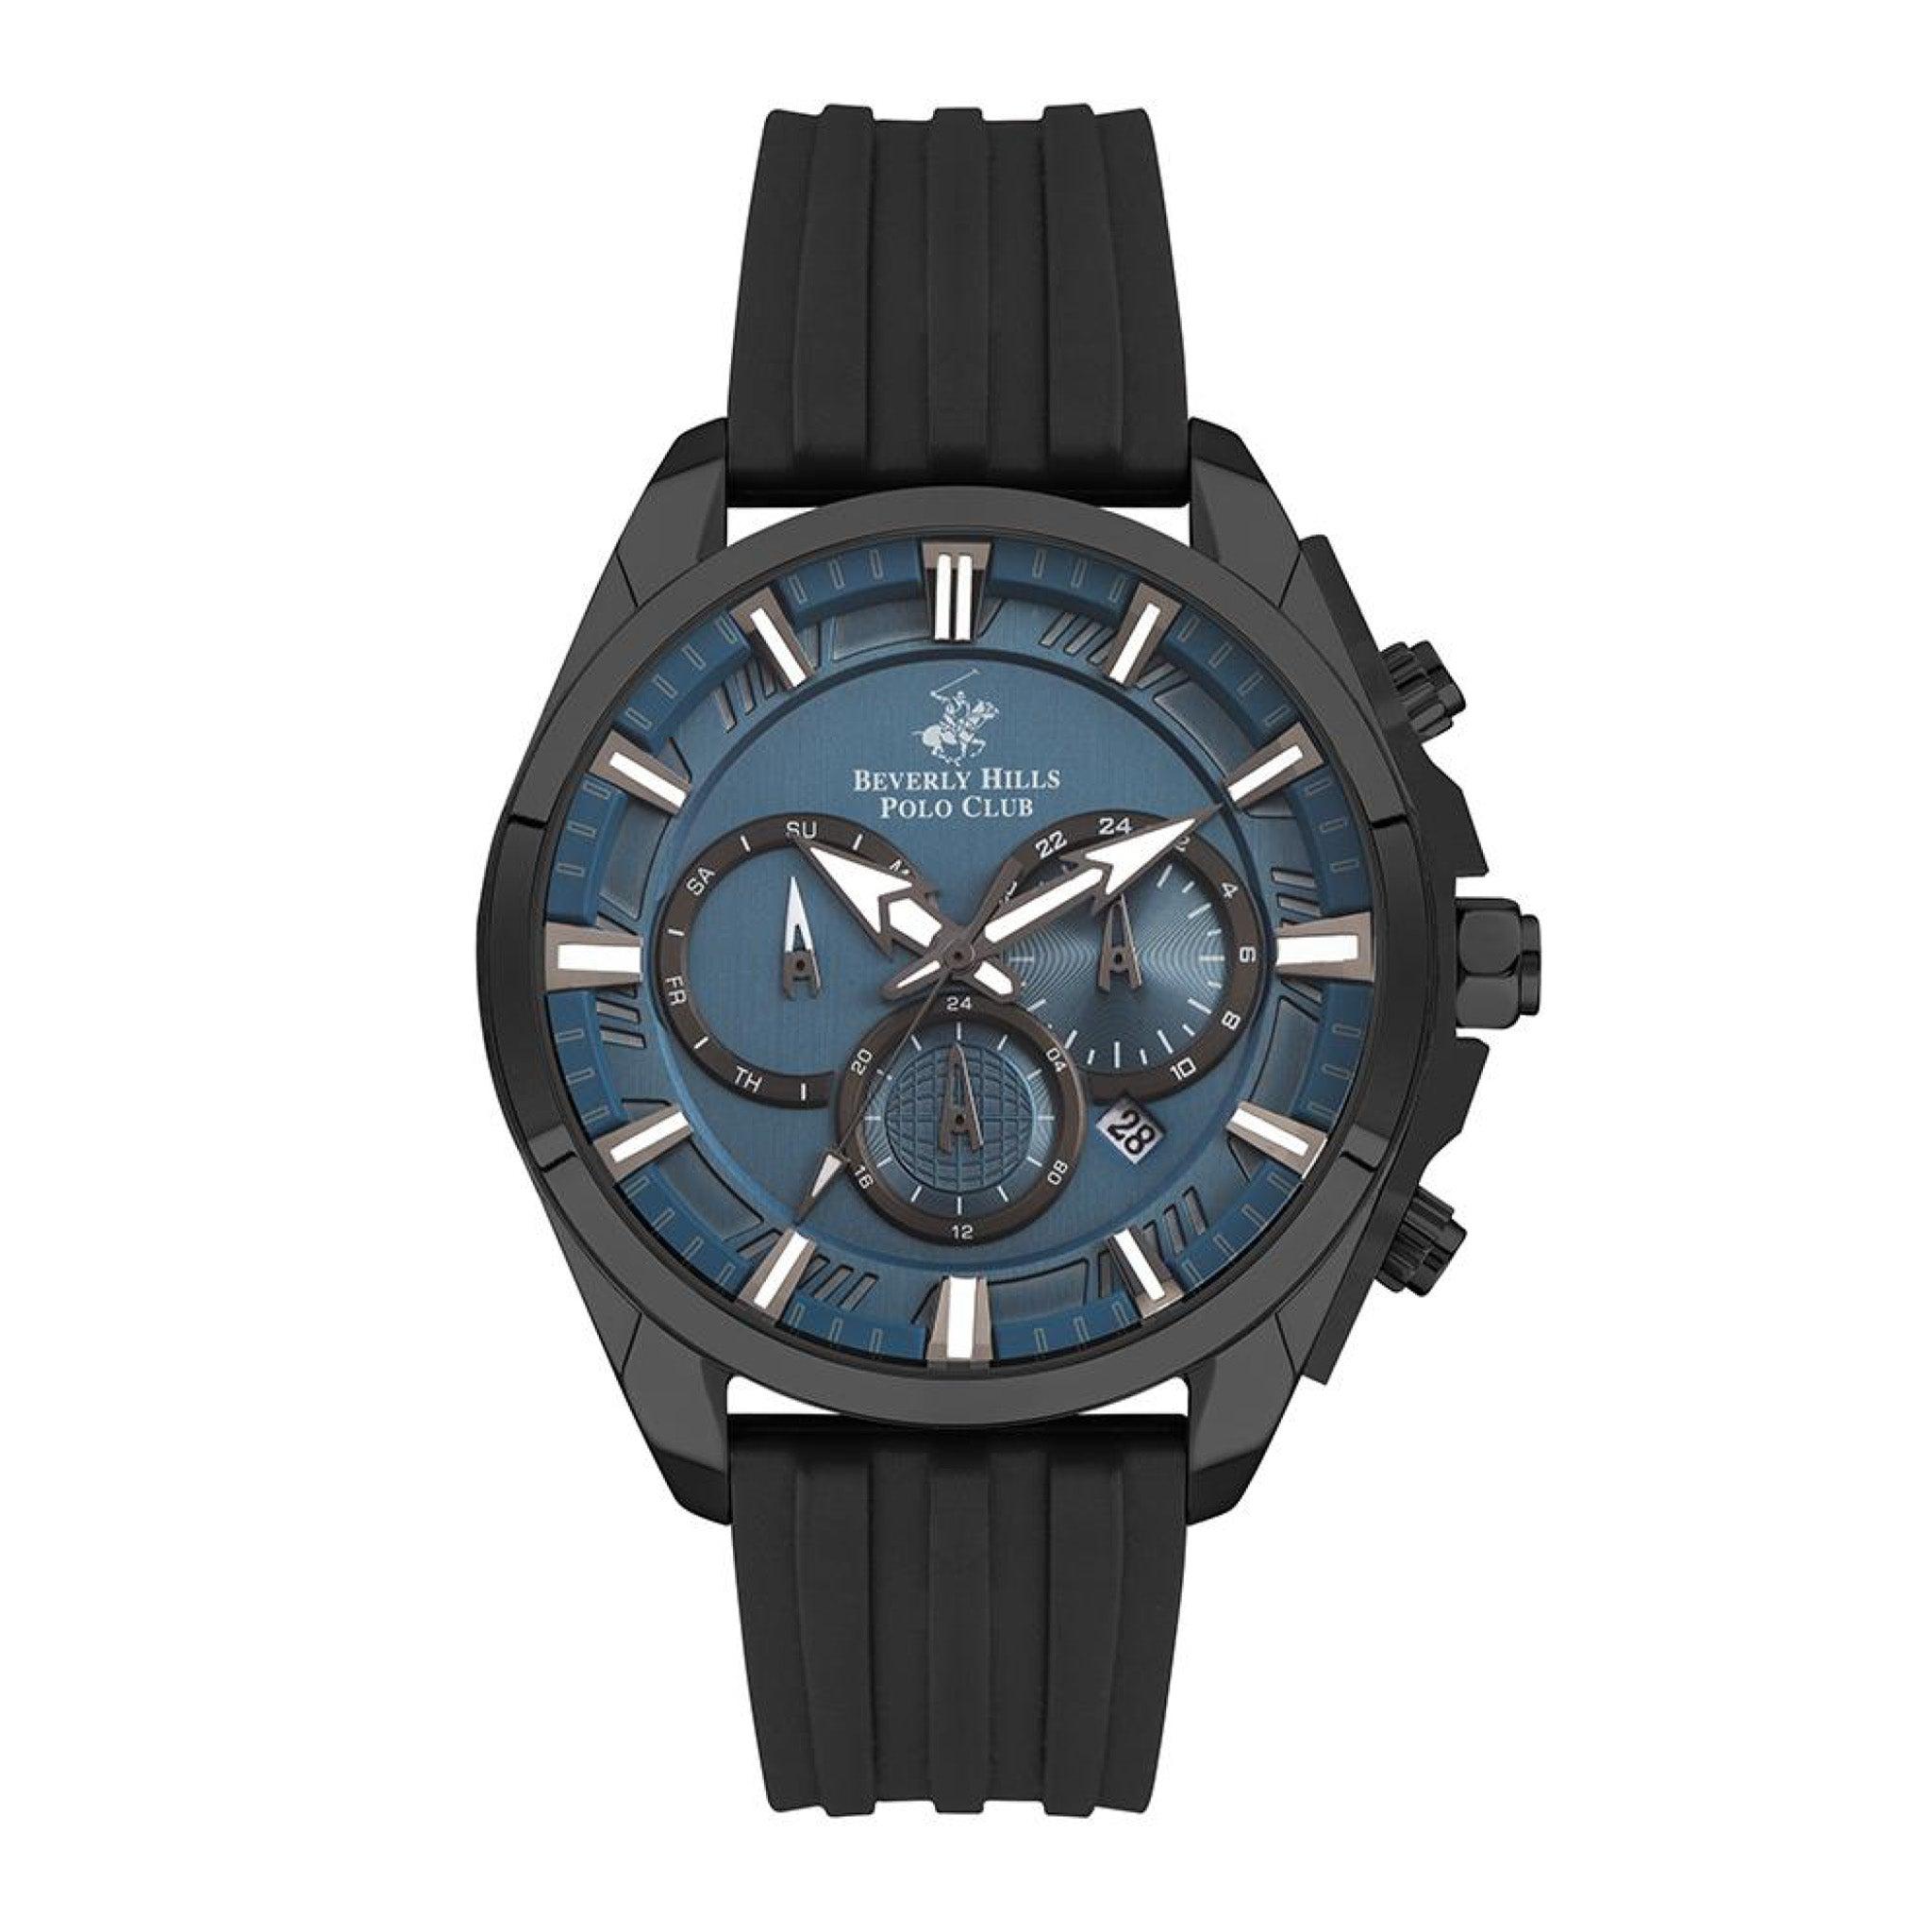 ساعة بيفرلي هيلز بولو كلوب للرجال متعددة الوظائف بمينا باللون الازرق الداكن Beverly Hills Polo Club Men's Multi Function Dark Blue 7699c Vpattern Dial Watch - Bp3267x.691